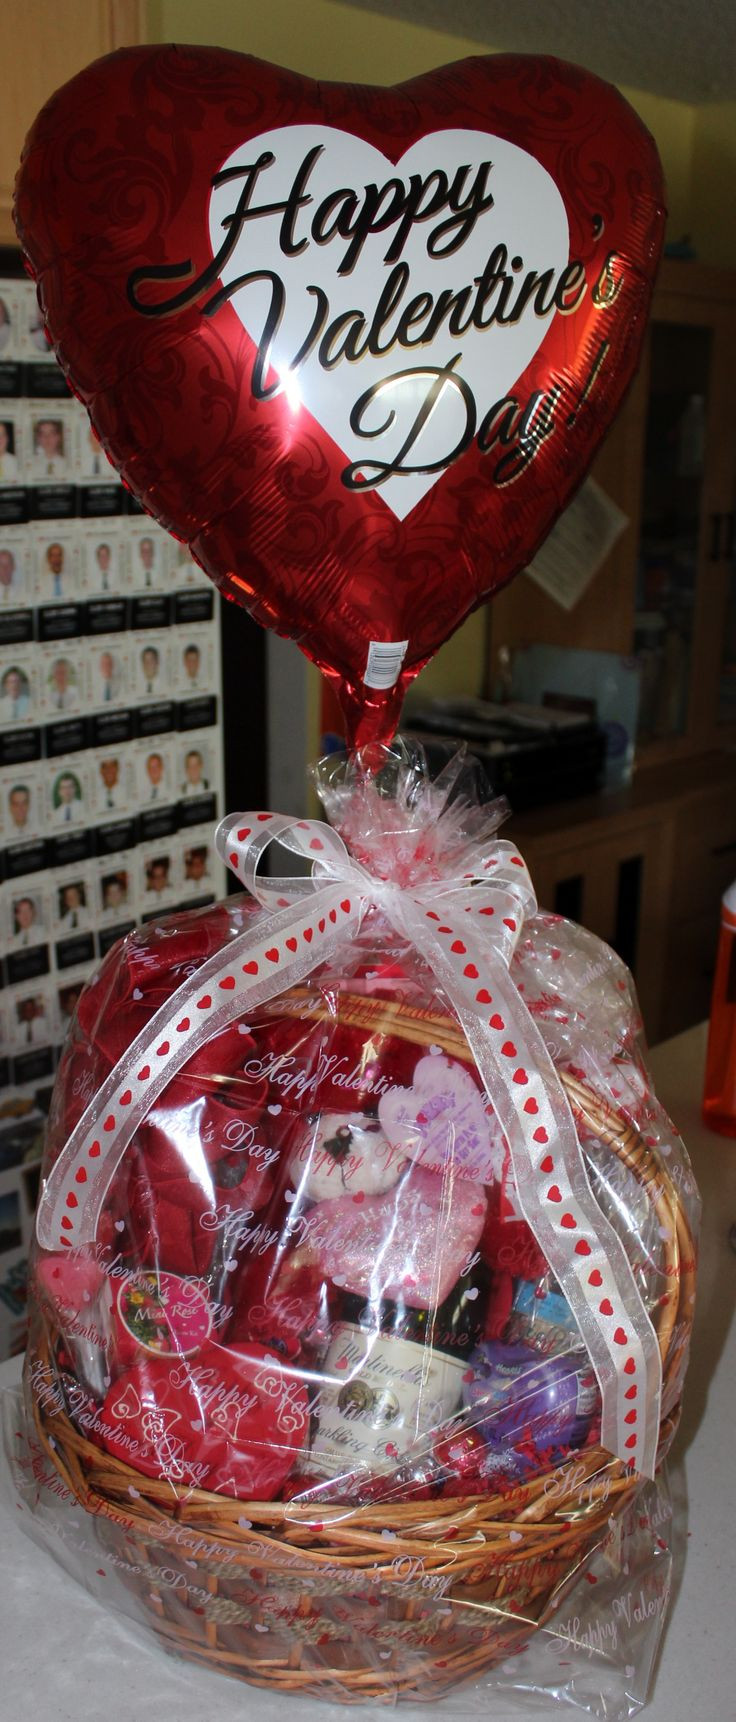 Small Valentine Gift Ideas
 Best 25 Valentine t baskets ideas on Pinterest